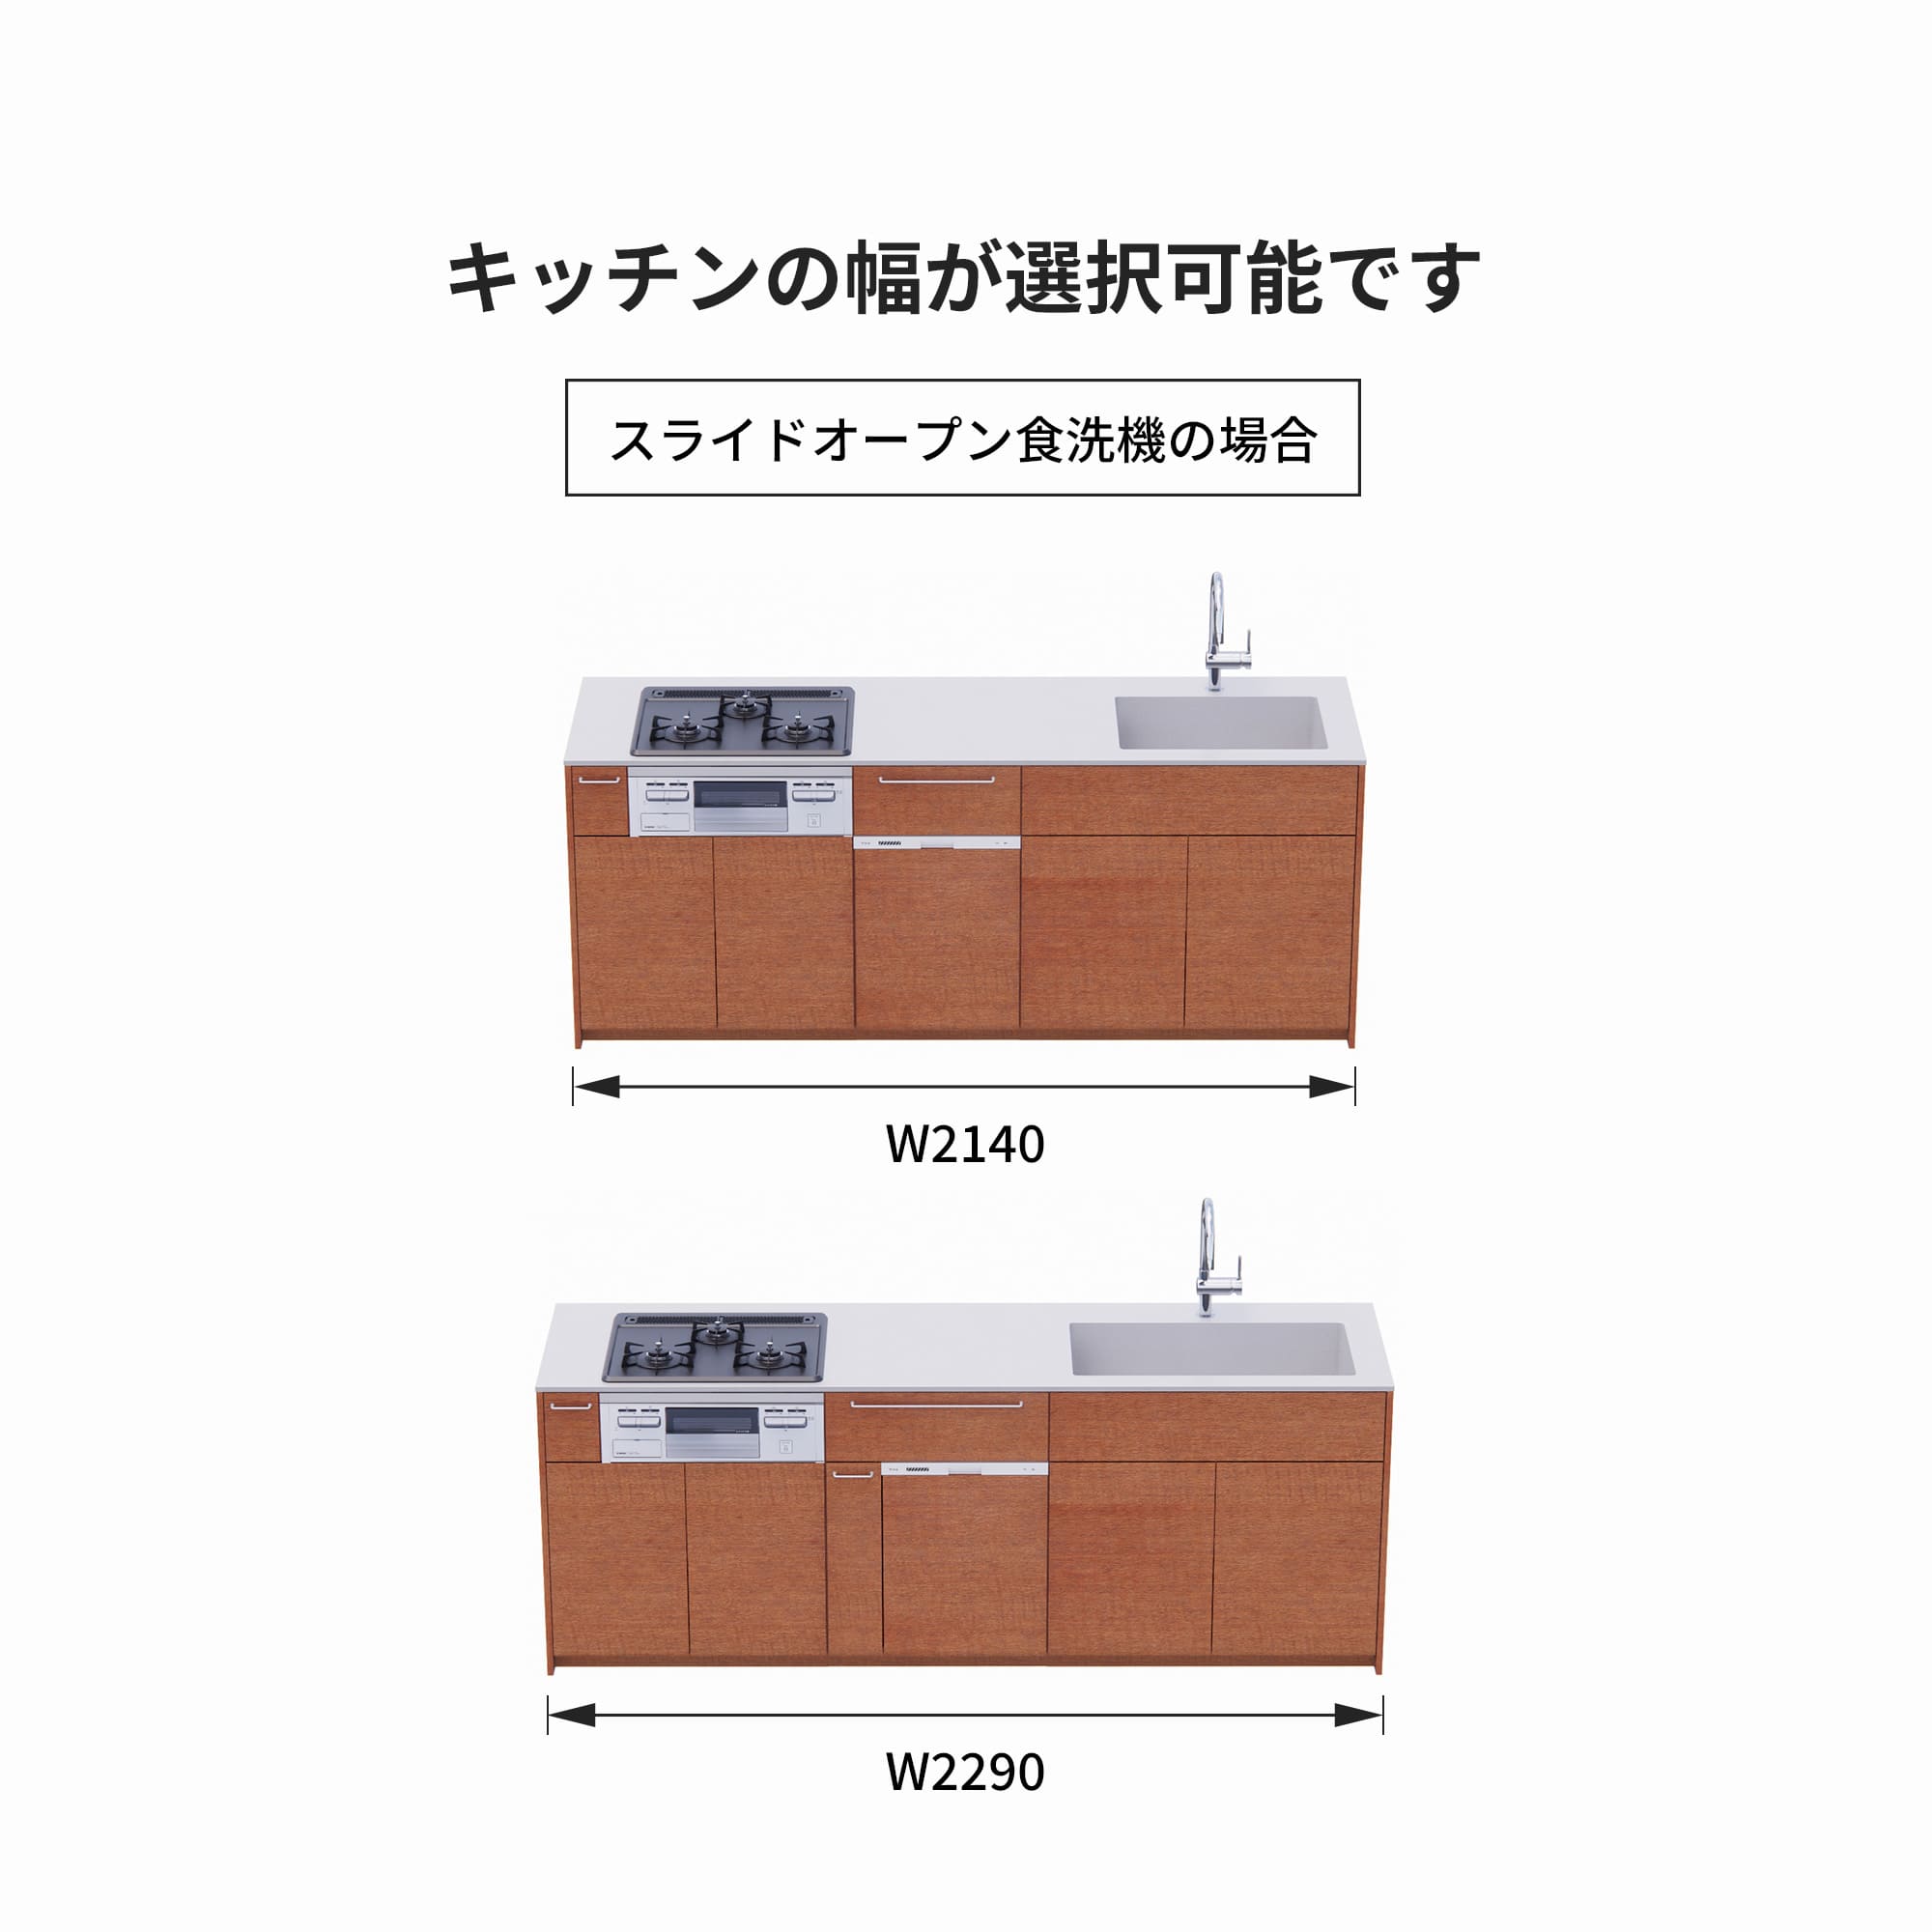 木製システムキッチン 壁付け型 W2140～2290・コンロあり / オーブンなし / 食洗機あり KB-KC022-20-G183 スライドオープンの場合